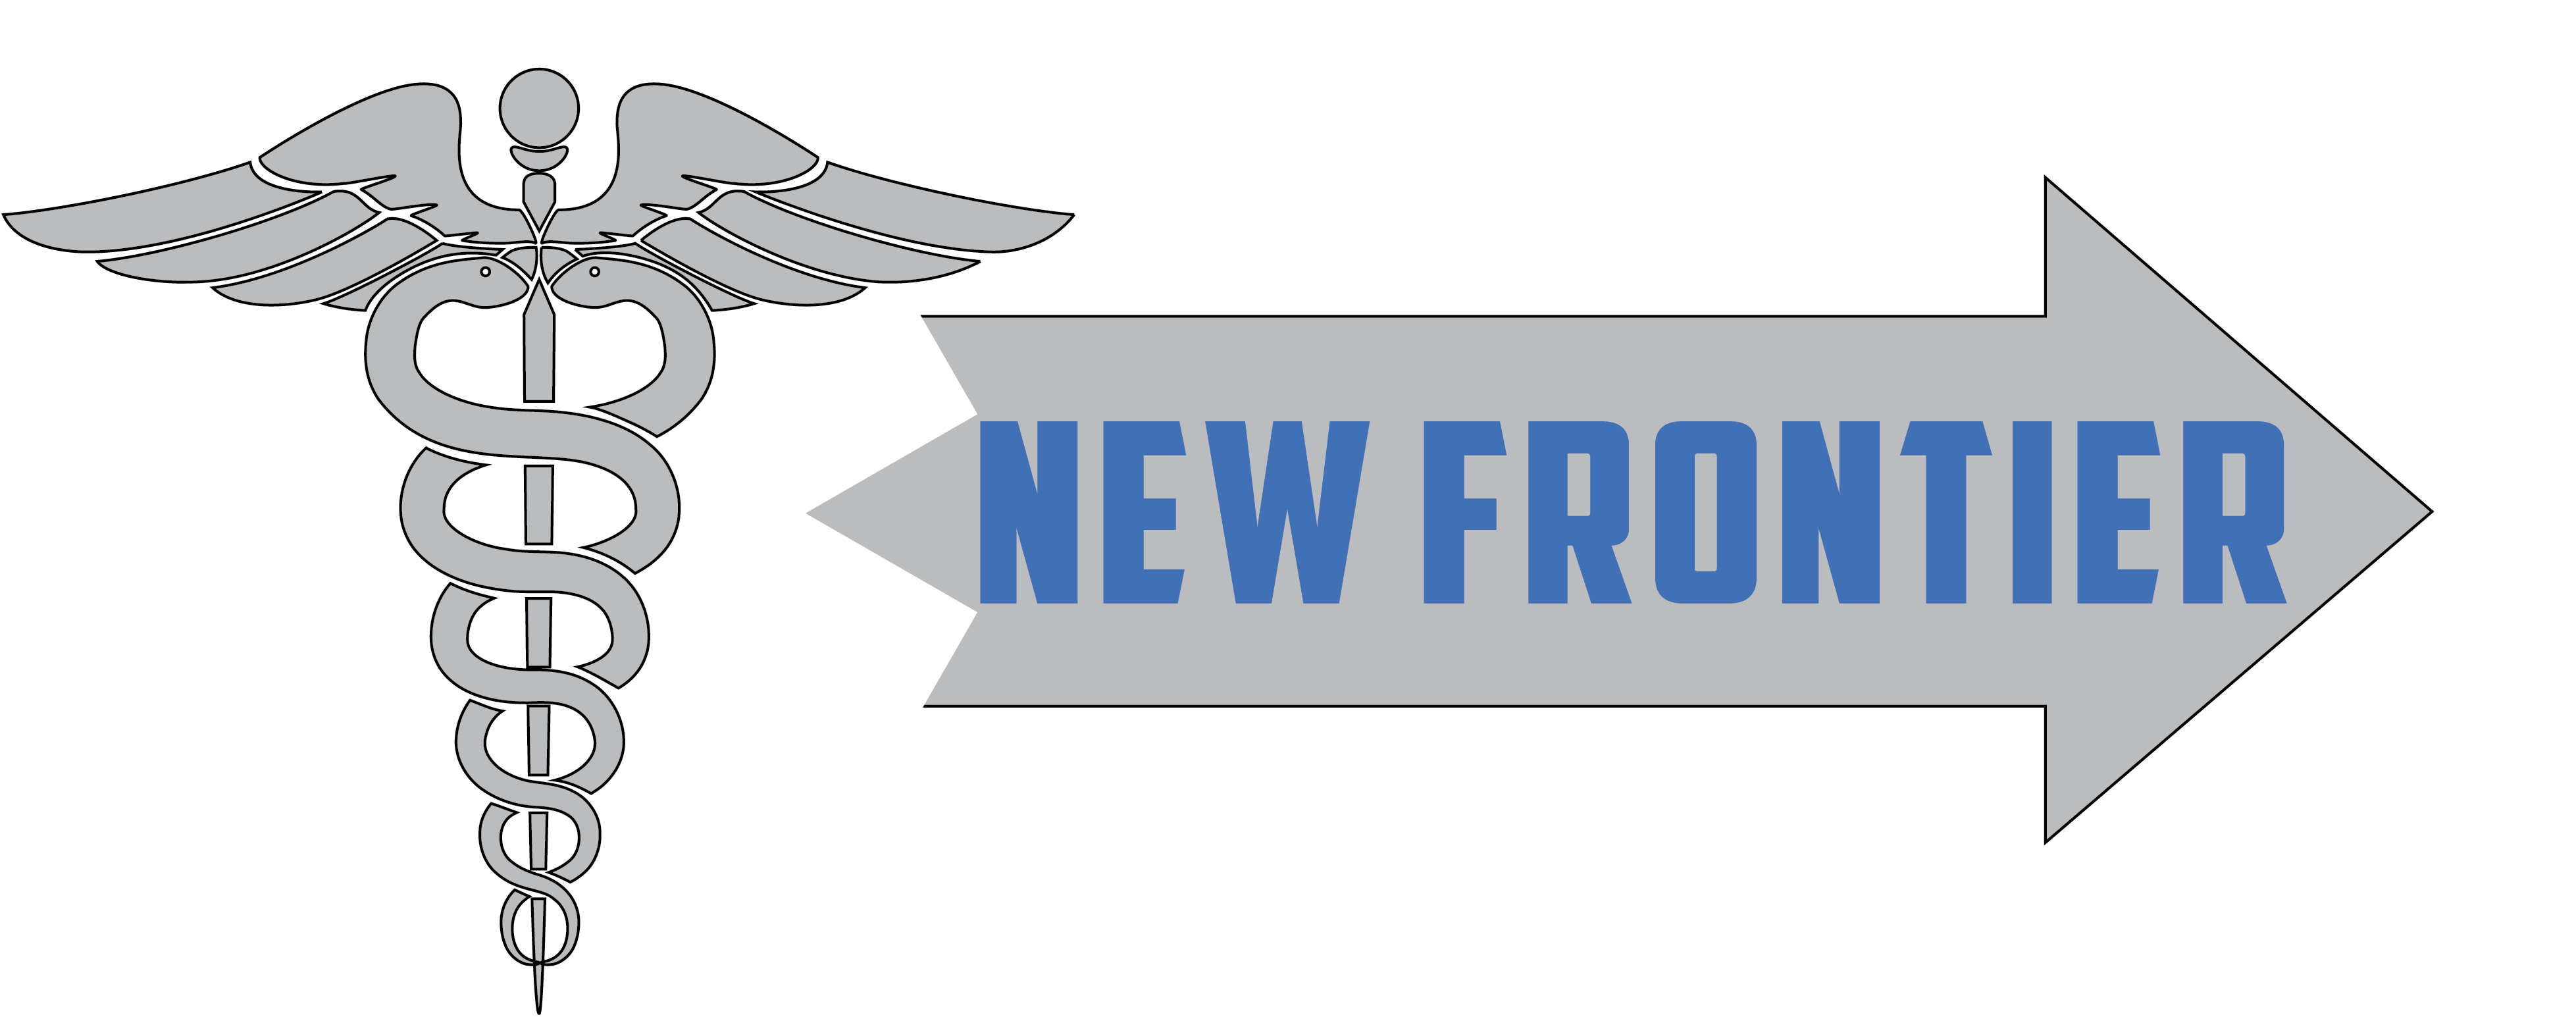 New Frontier Emergency Medicine